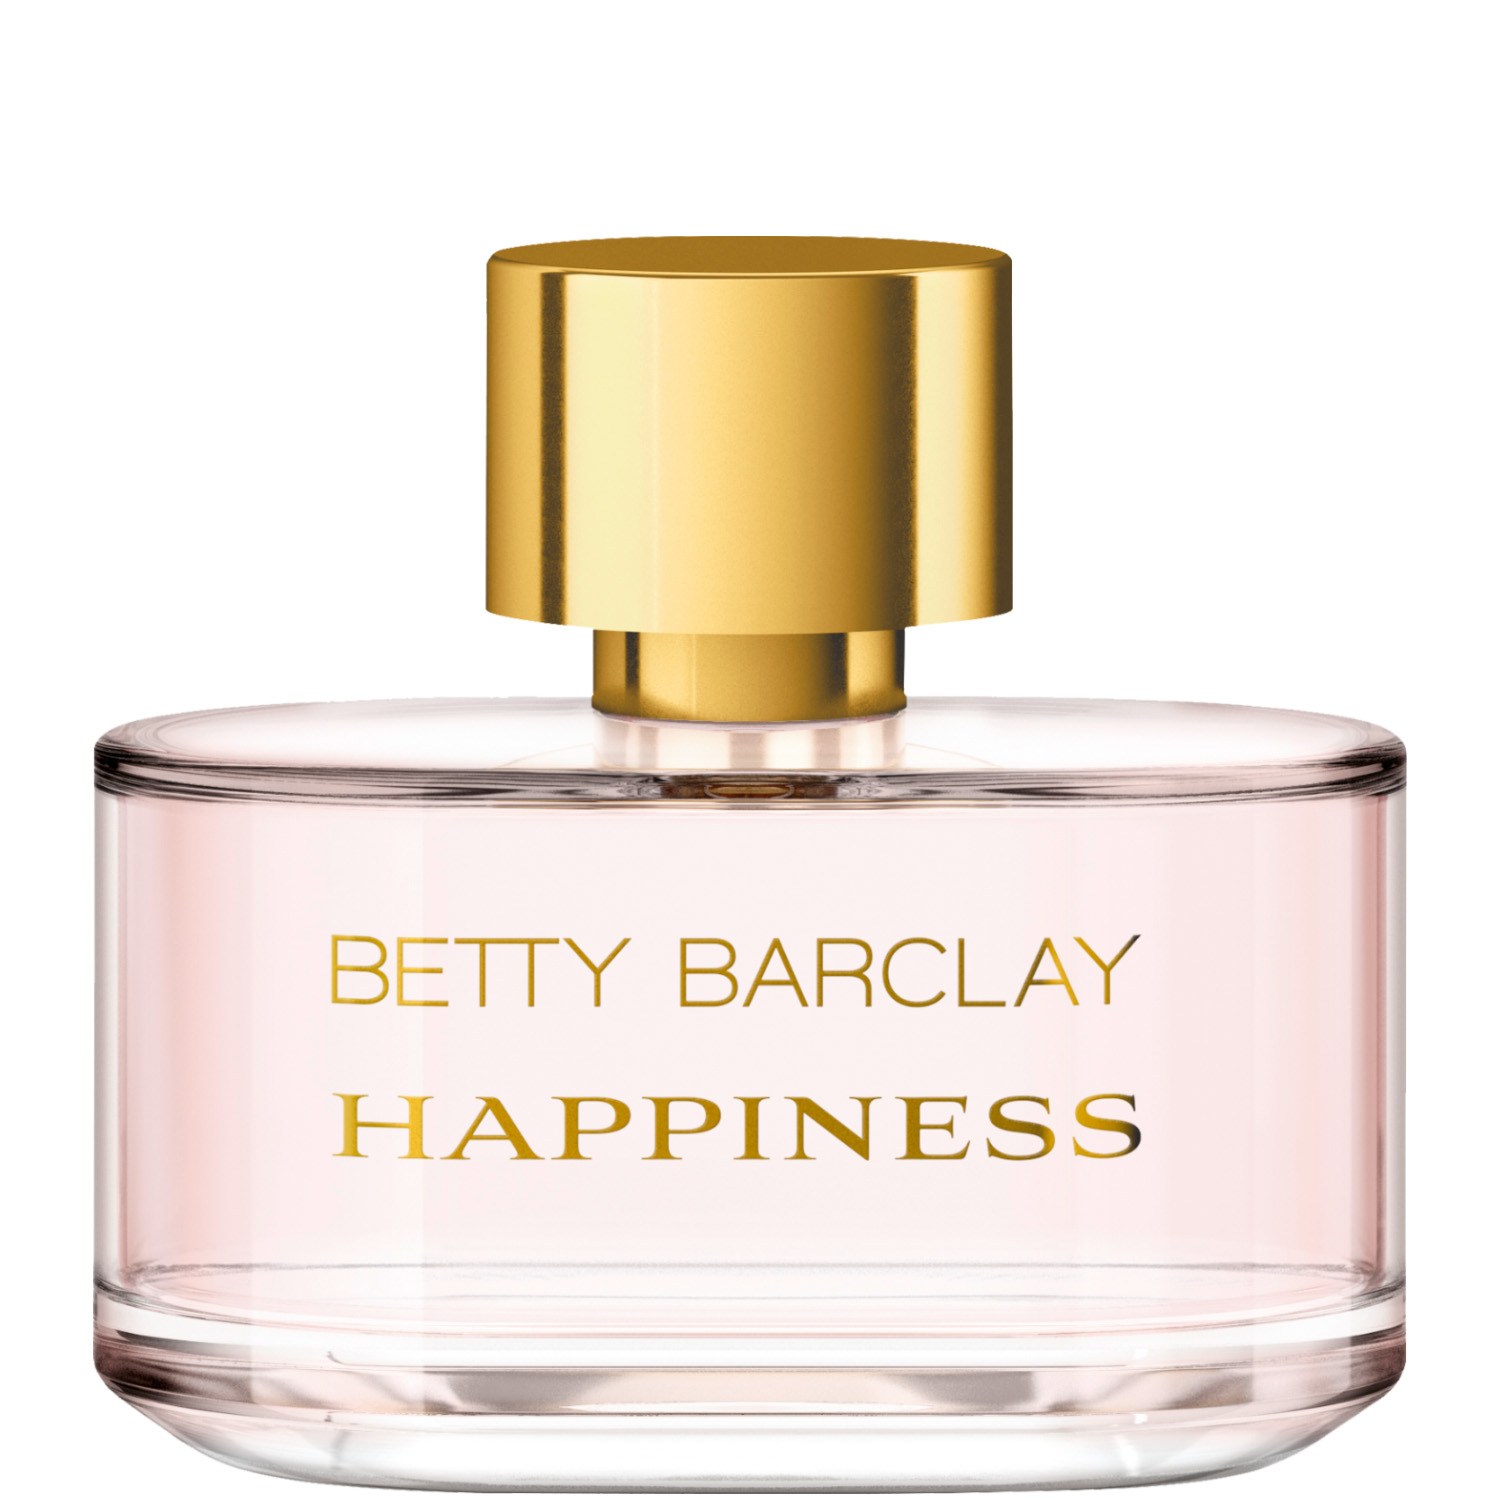 Betty Barclay Happiness Eau de Toilette 50ml